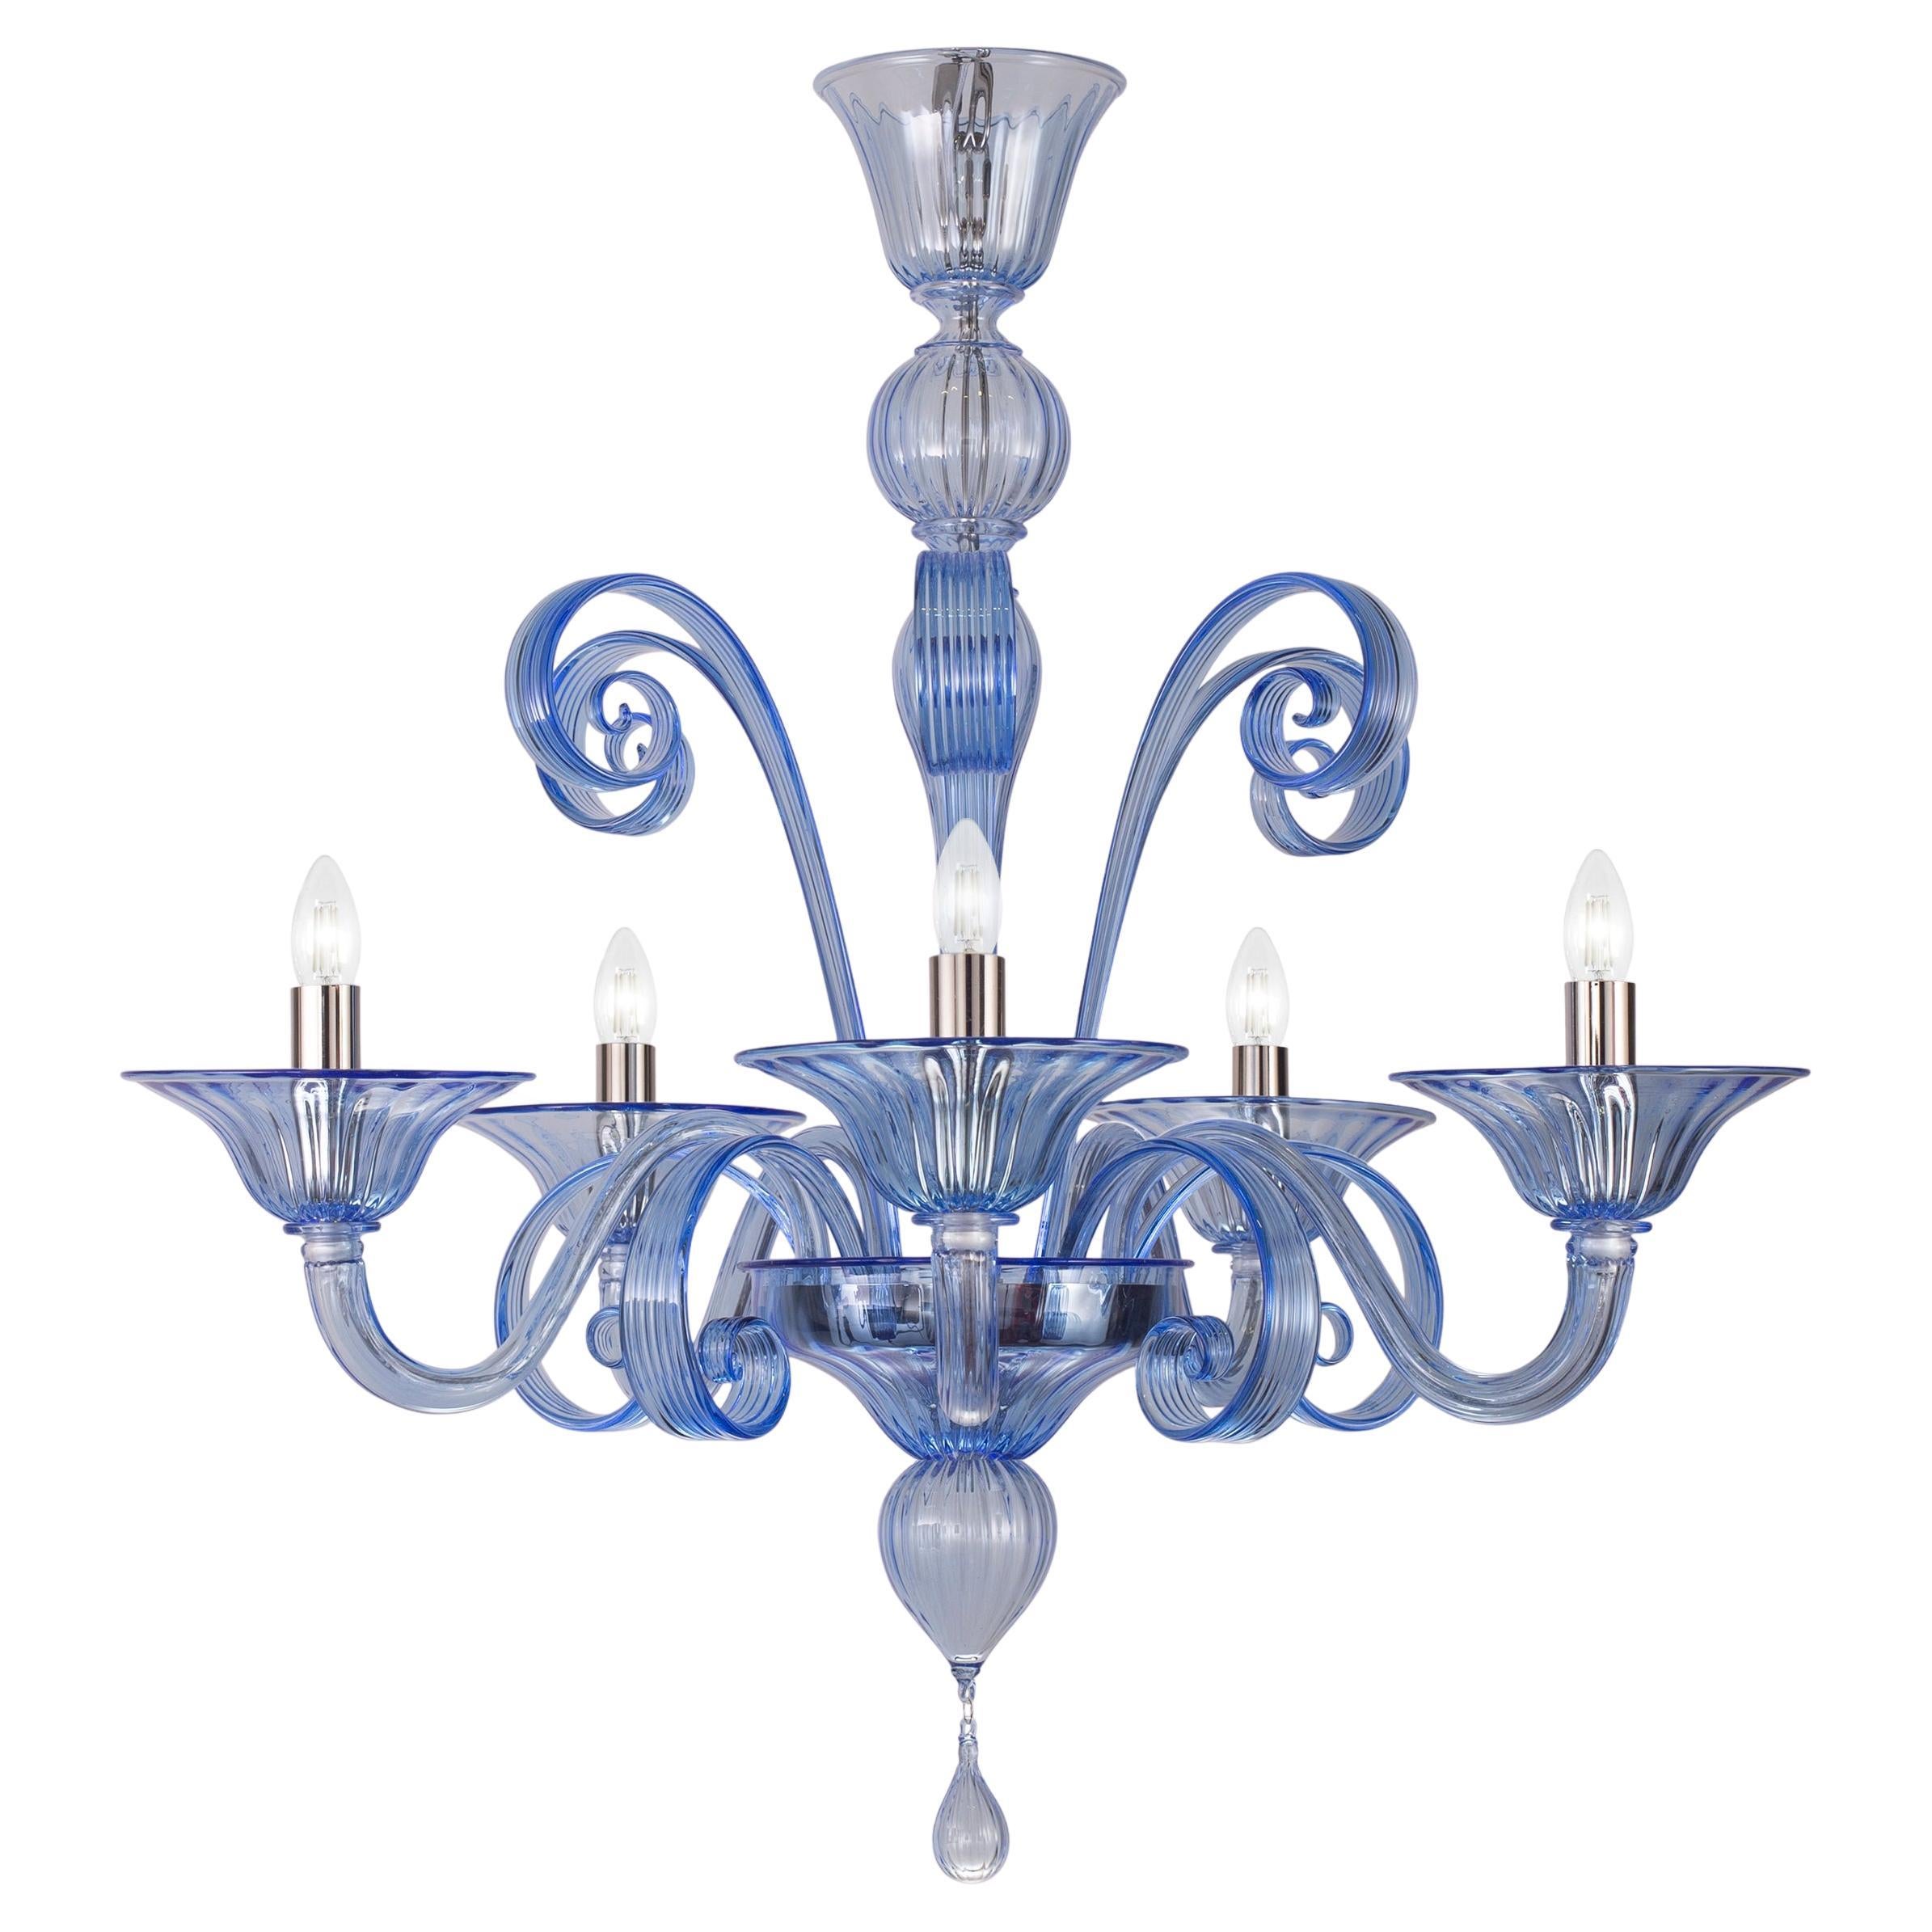 Capriccio Kronleuchter 5 Arme Blau Artistic Murano Glas von Multiforme